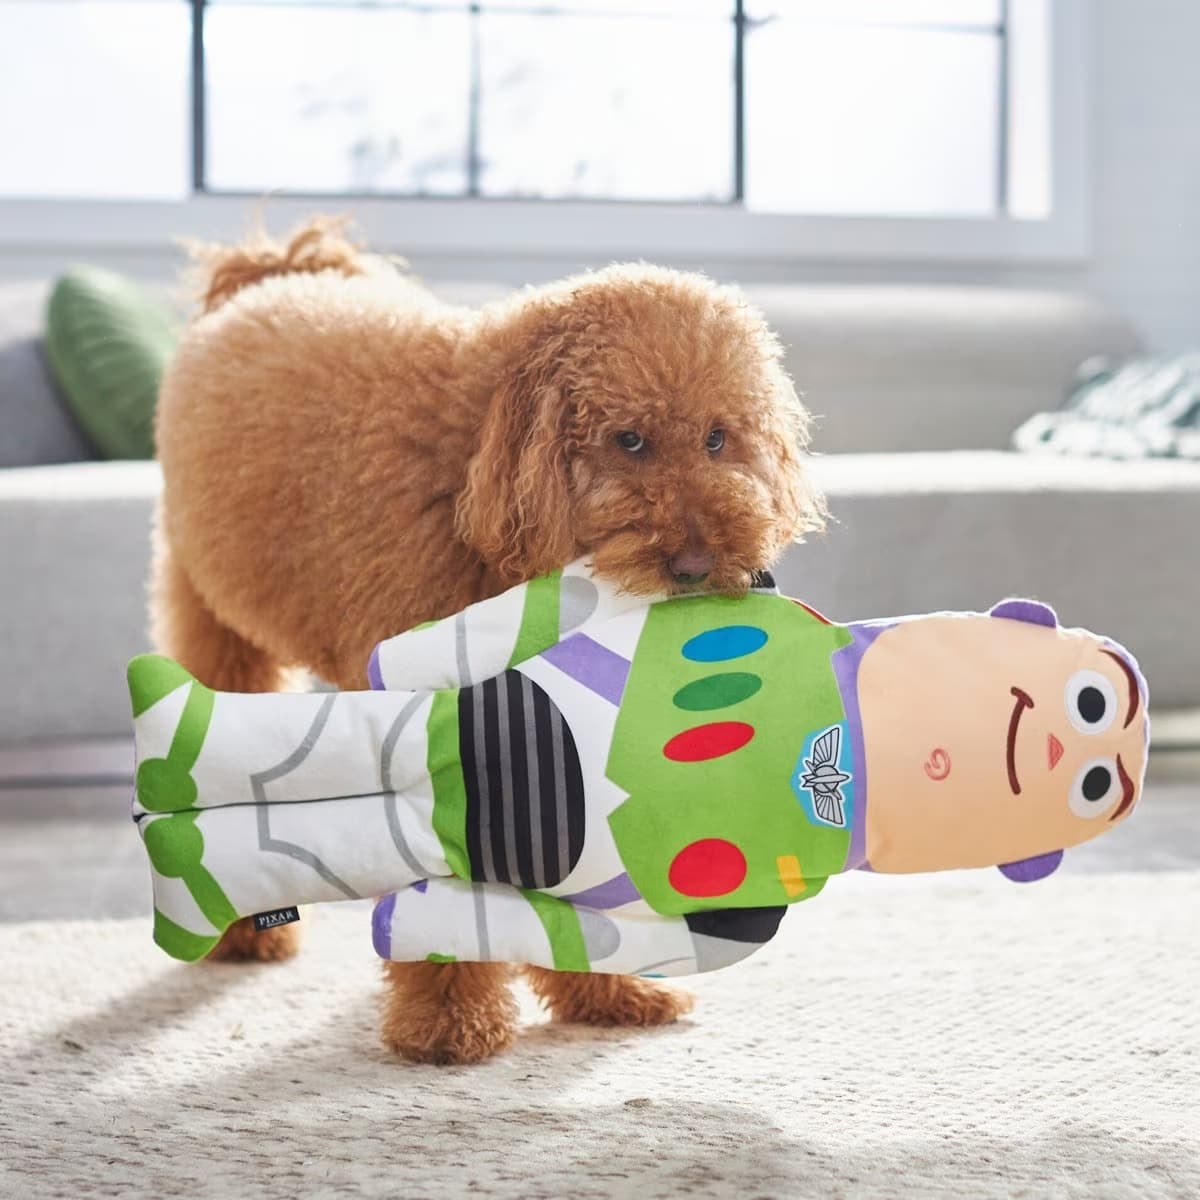 dog with Buzz Lightyear stuffed toy